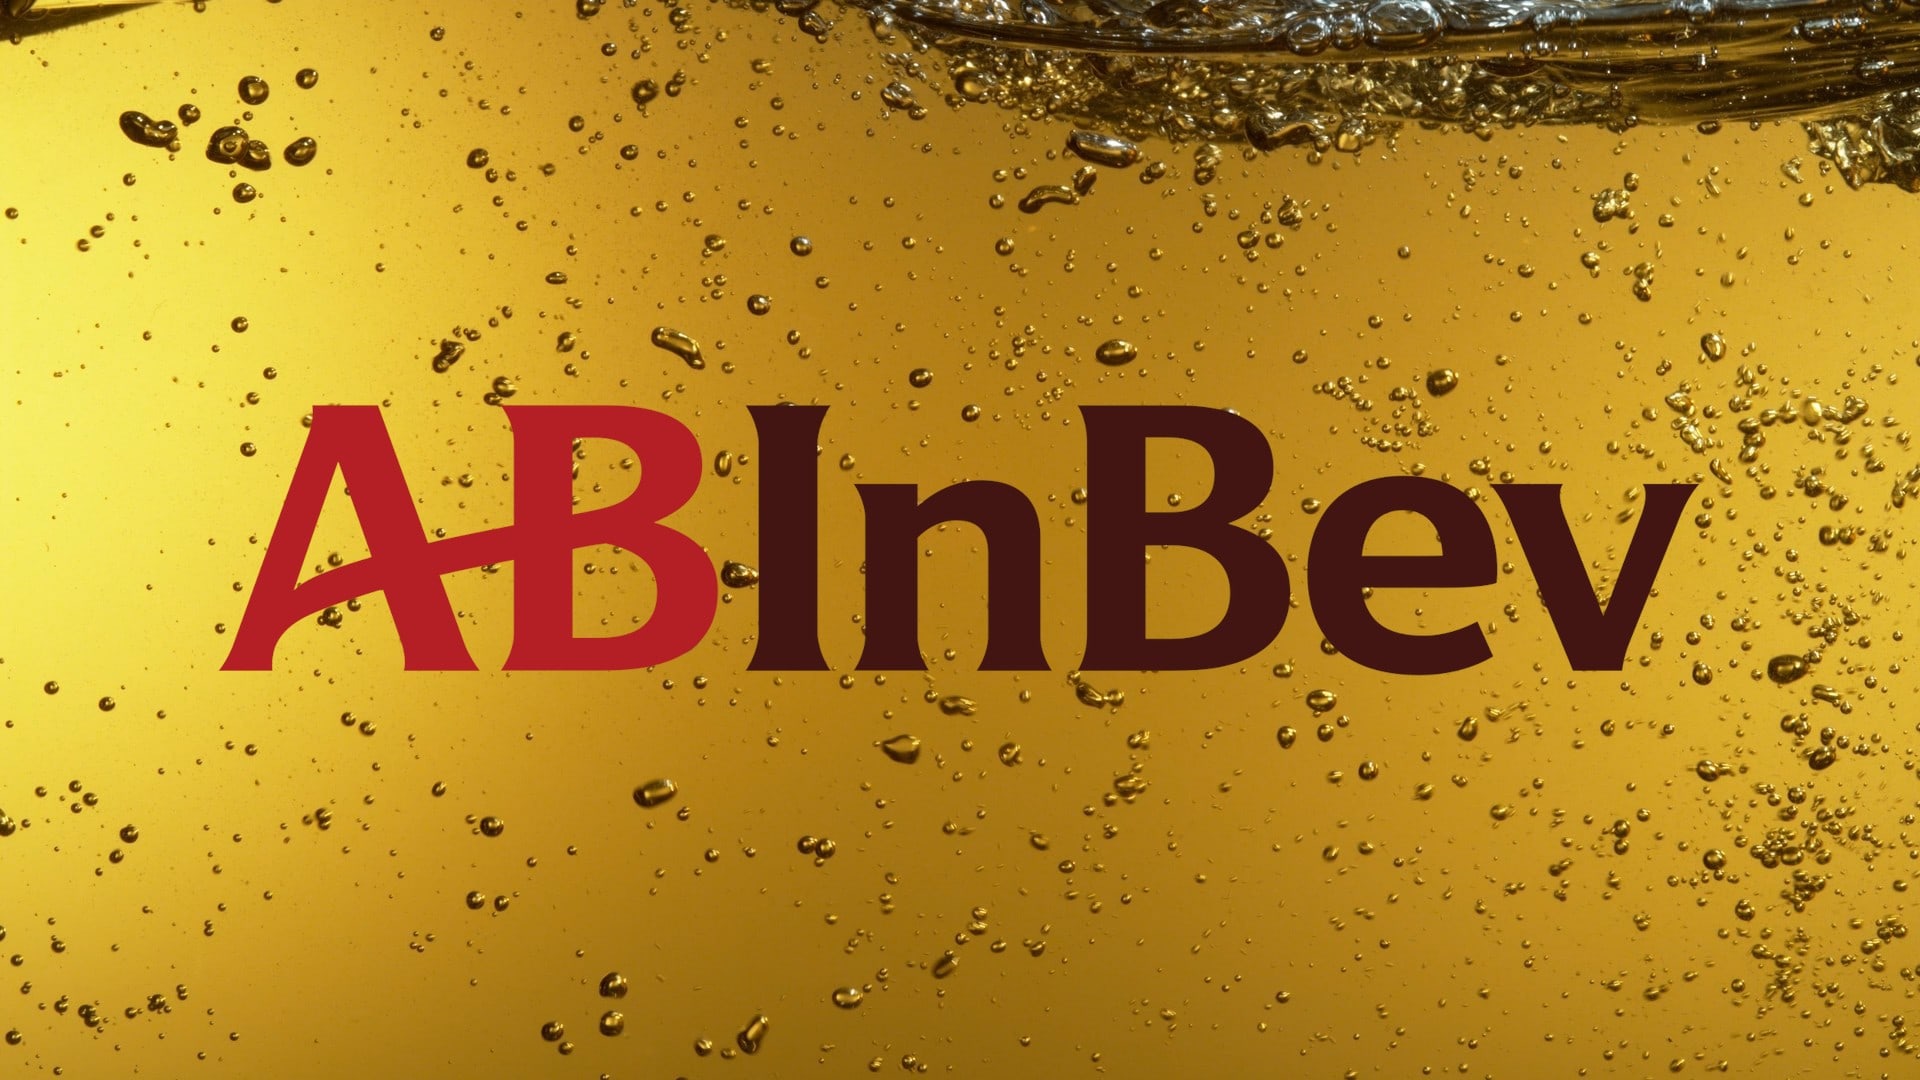 Anheuser-Busch InBev is Beer Brands